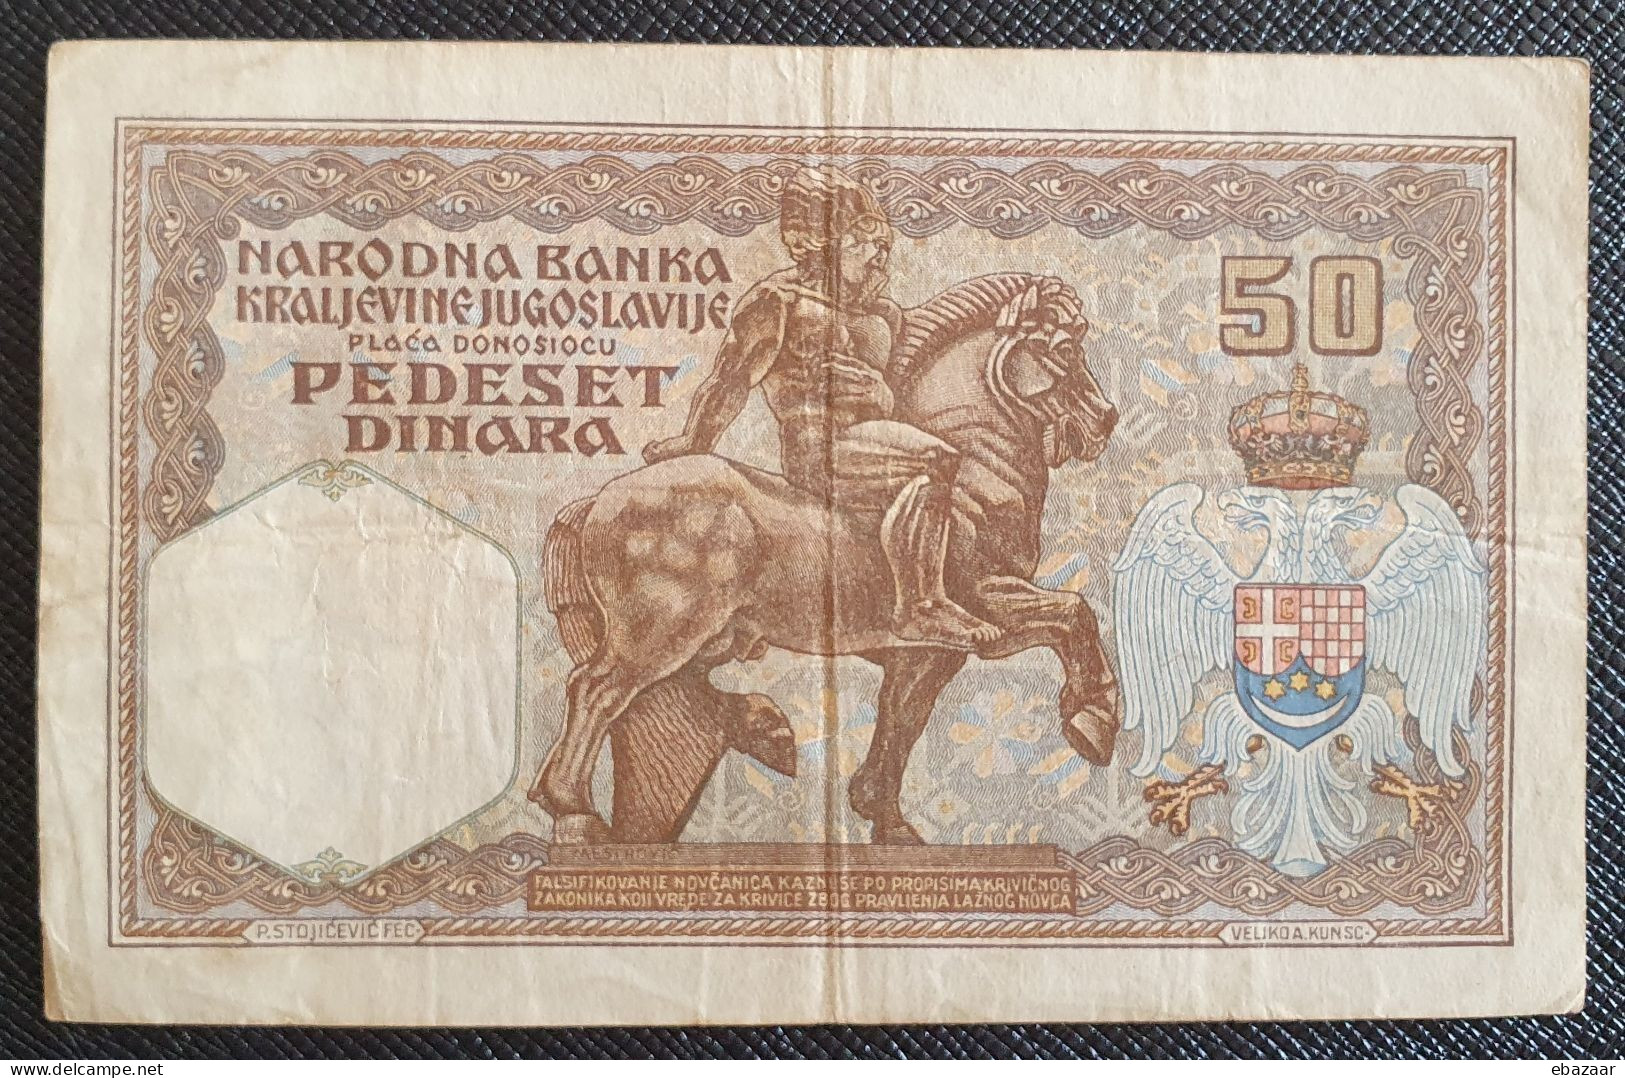 Yugoslavia 1931 (Narodna Banka Kraljevine Jugoslavije) 50 Dinara Banknote P-28 Circulated + FREE GIFT - Yugoslavia